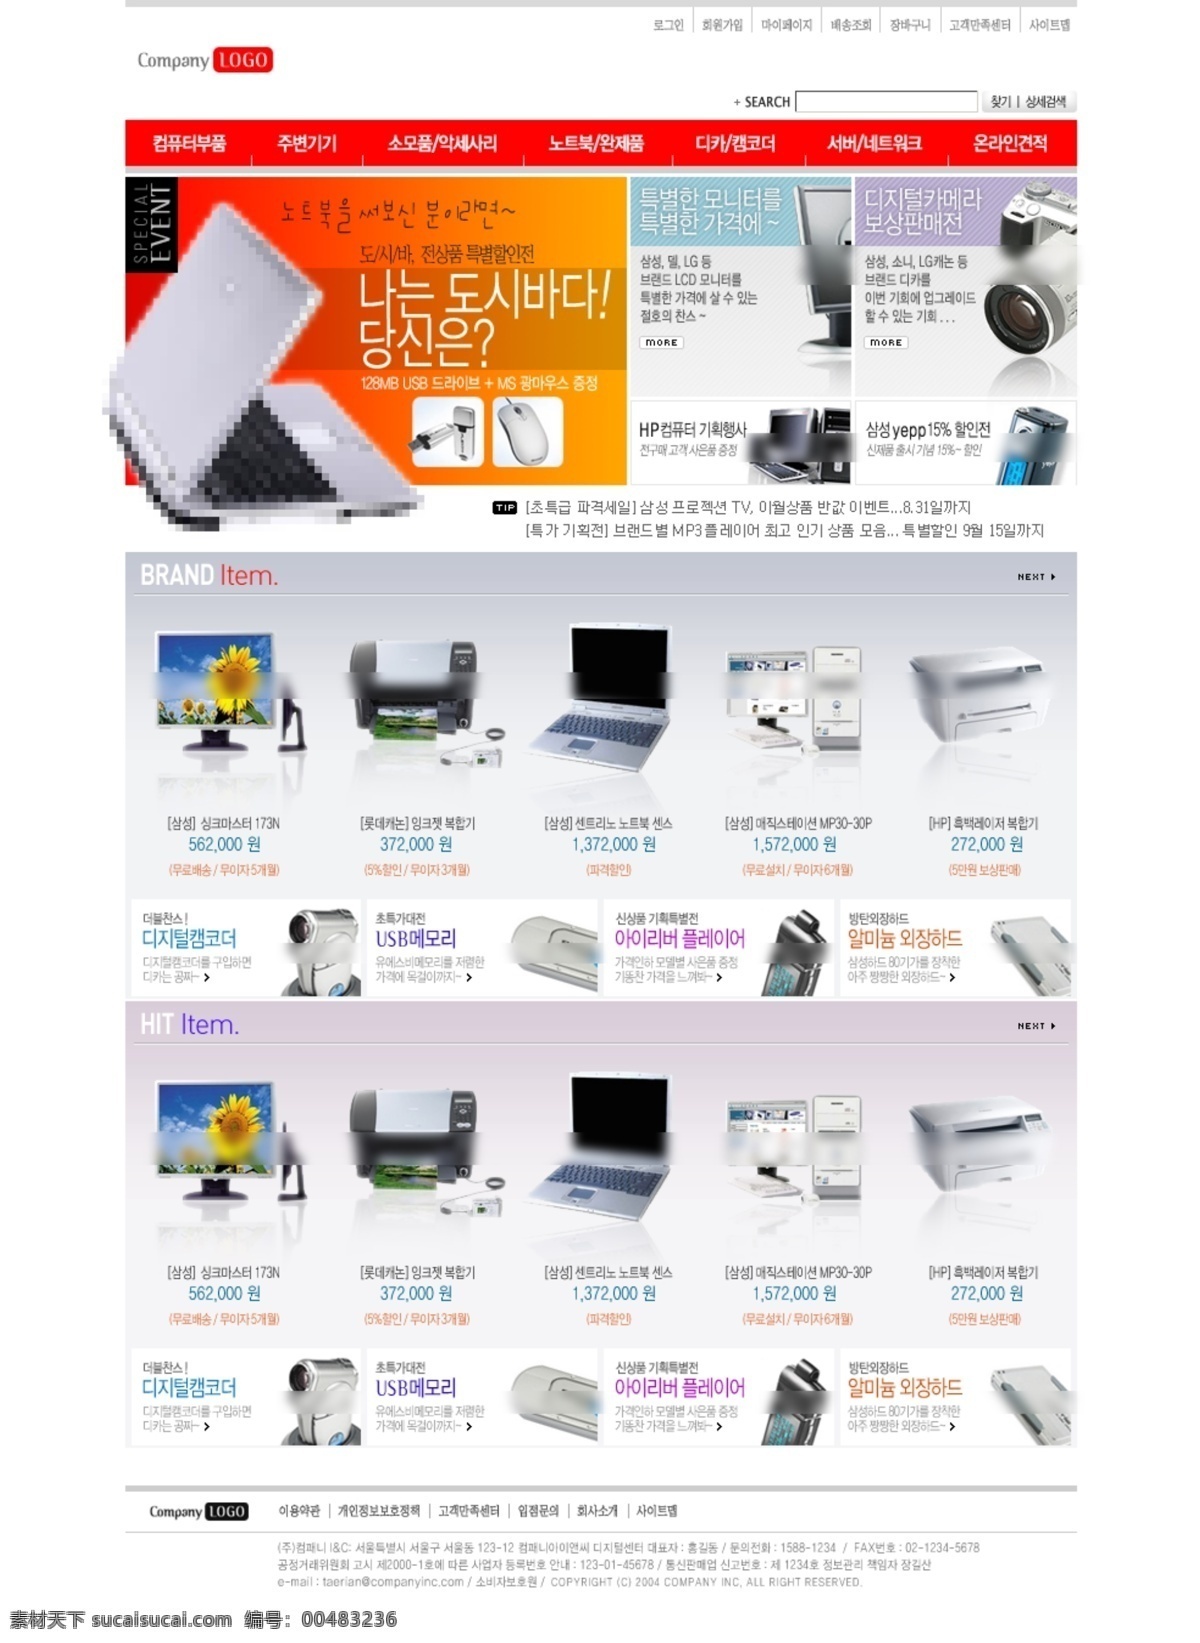 电子产品 网站 产品展示 公司企业 网页素材 电脑网站 网页模板